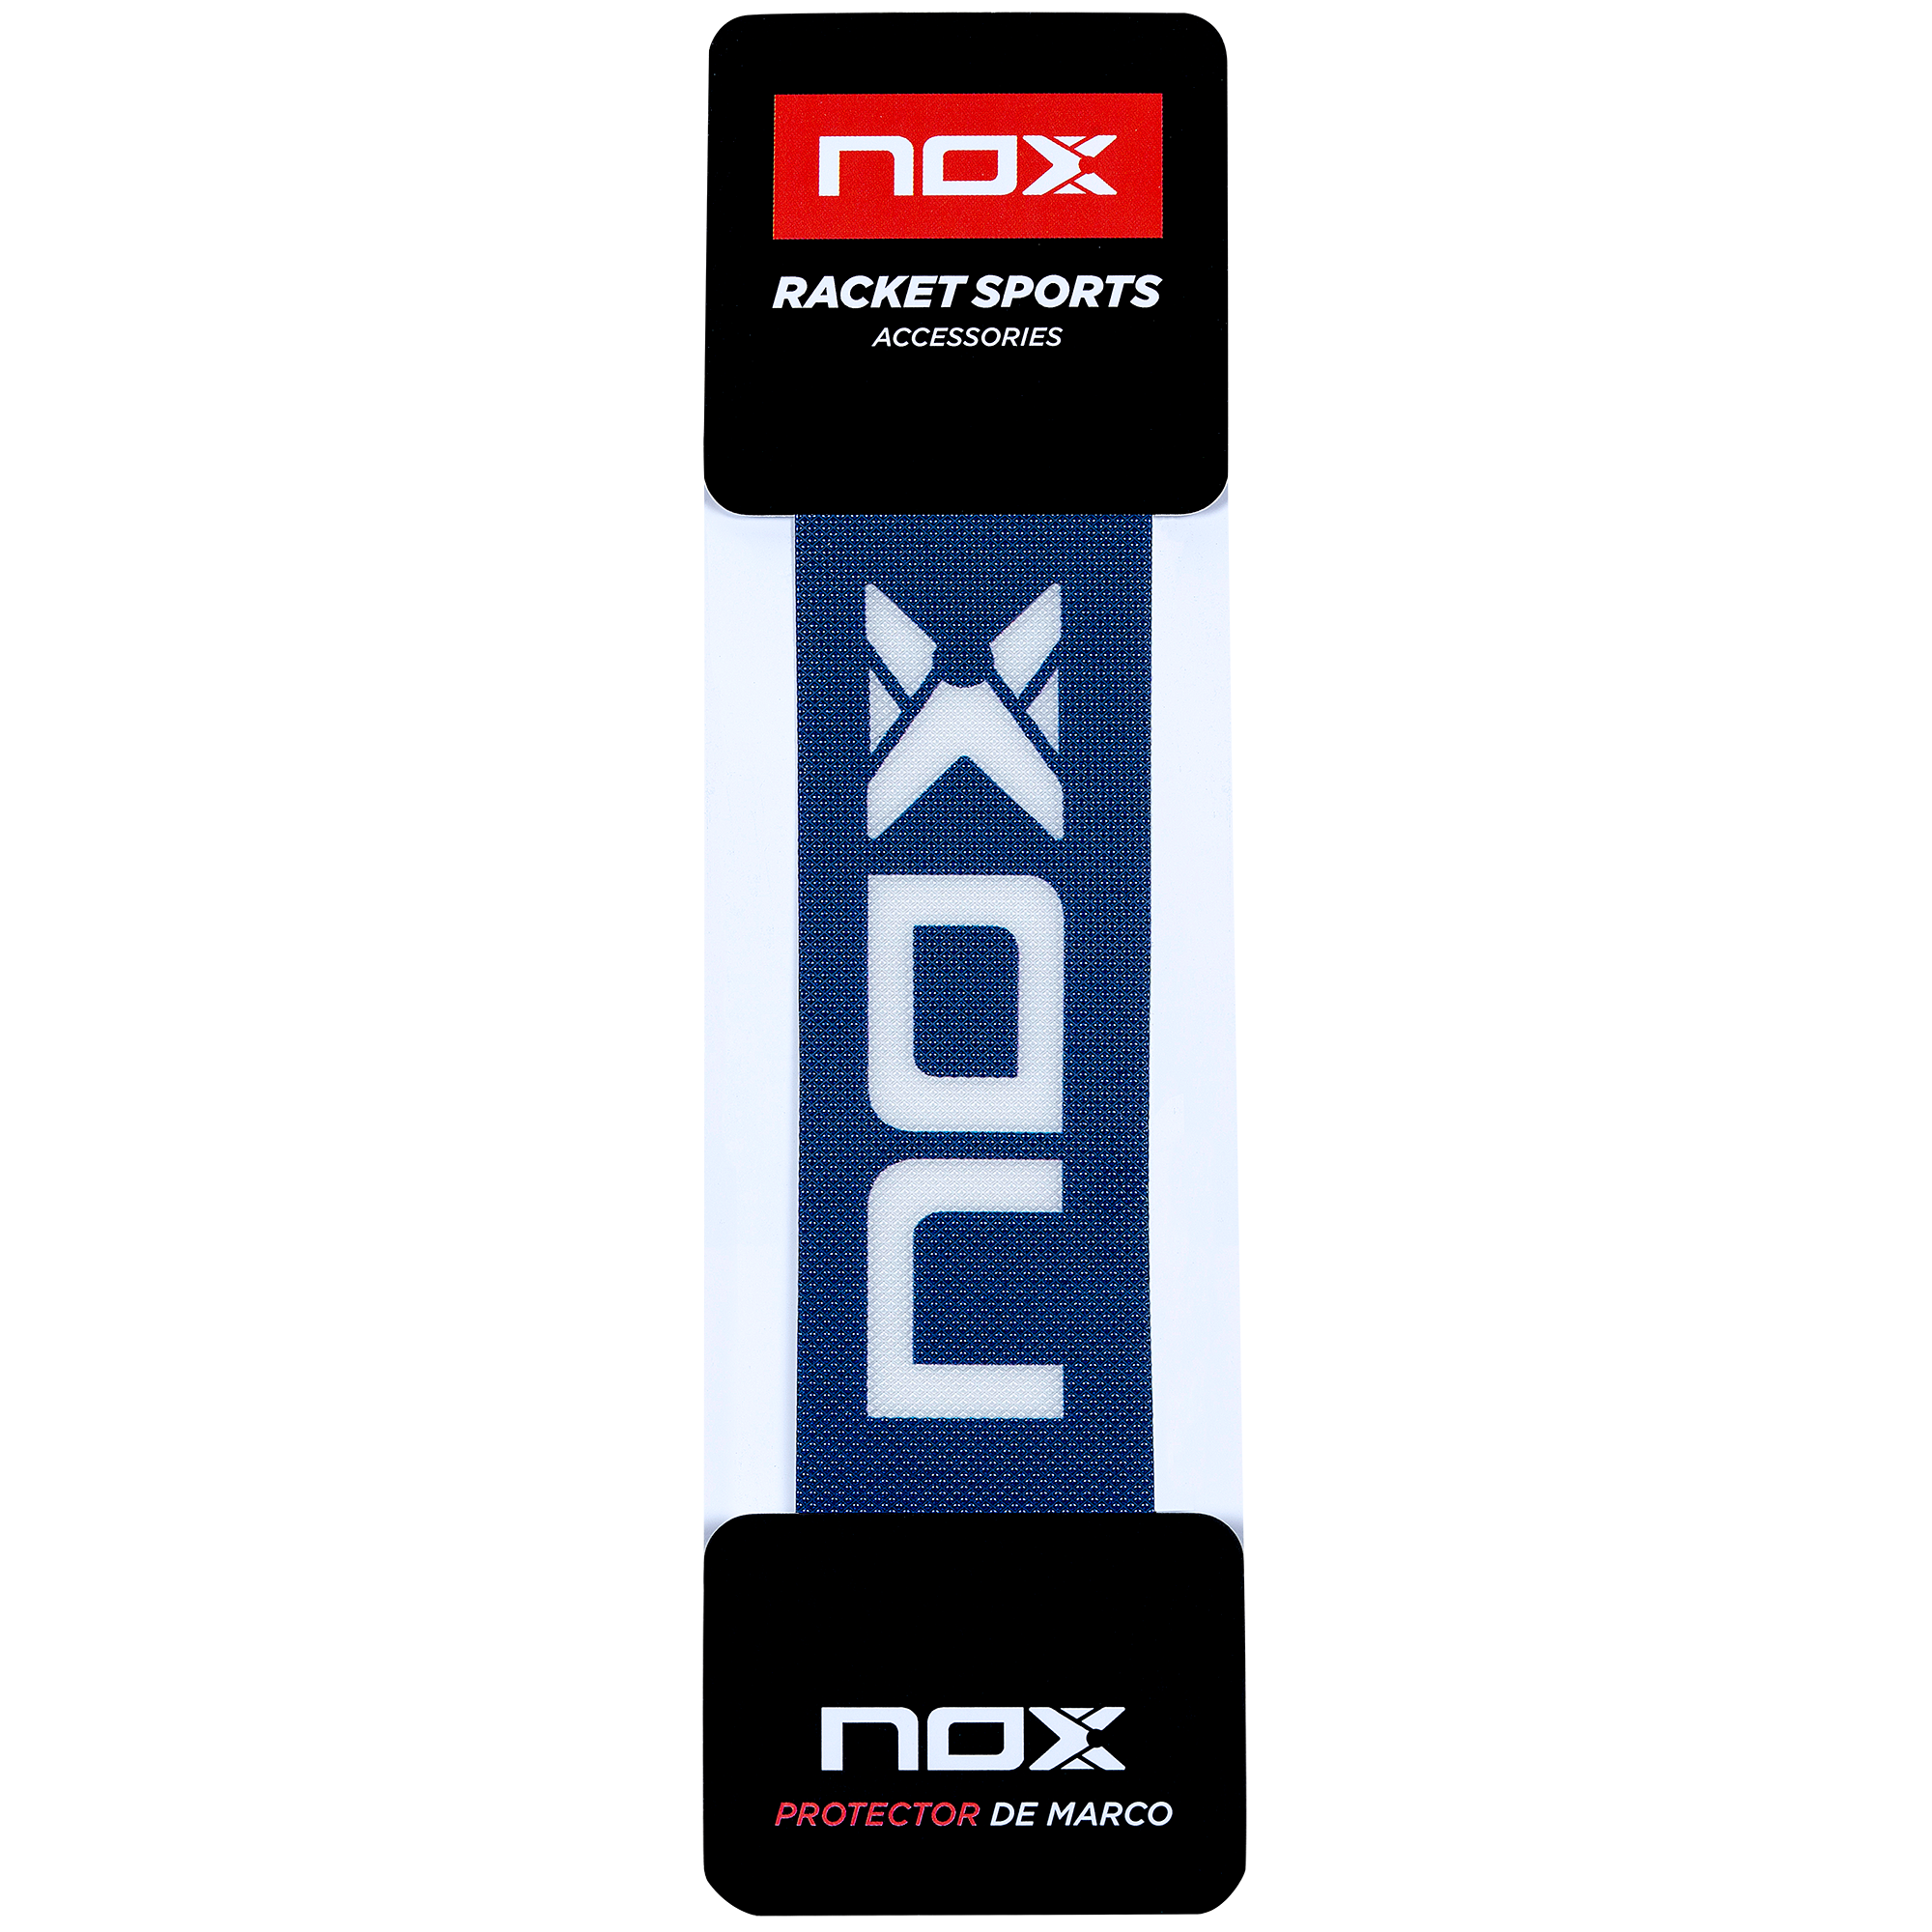 Nox Protector (Blå m/Nox logo)